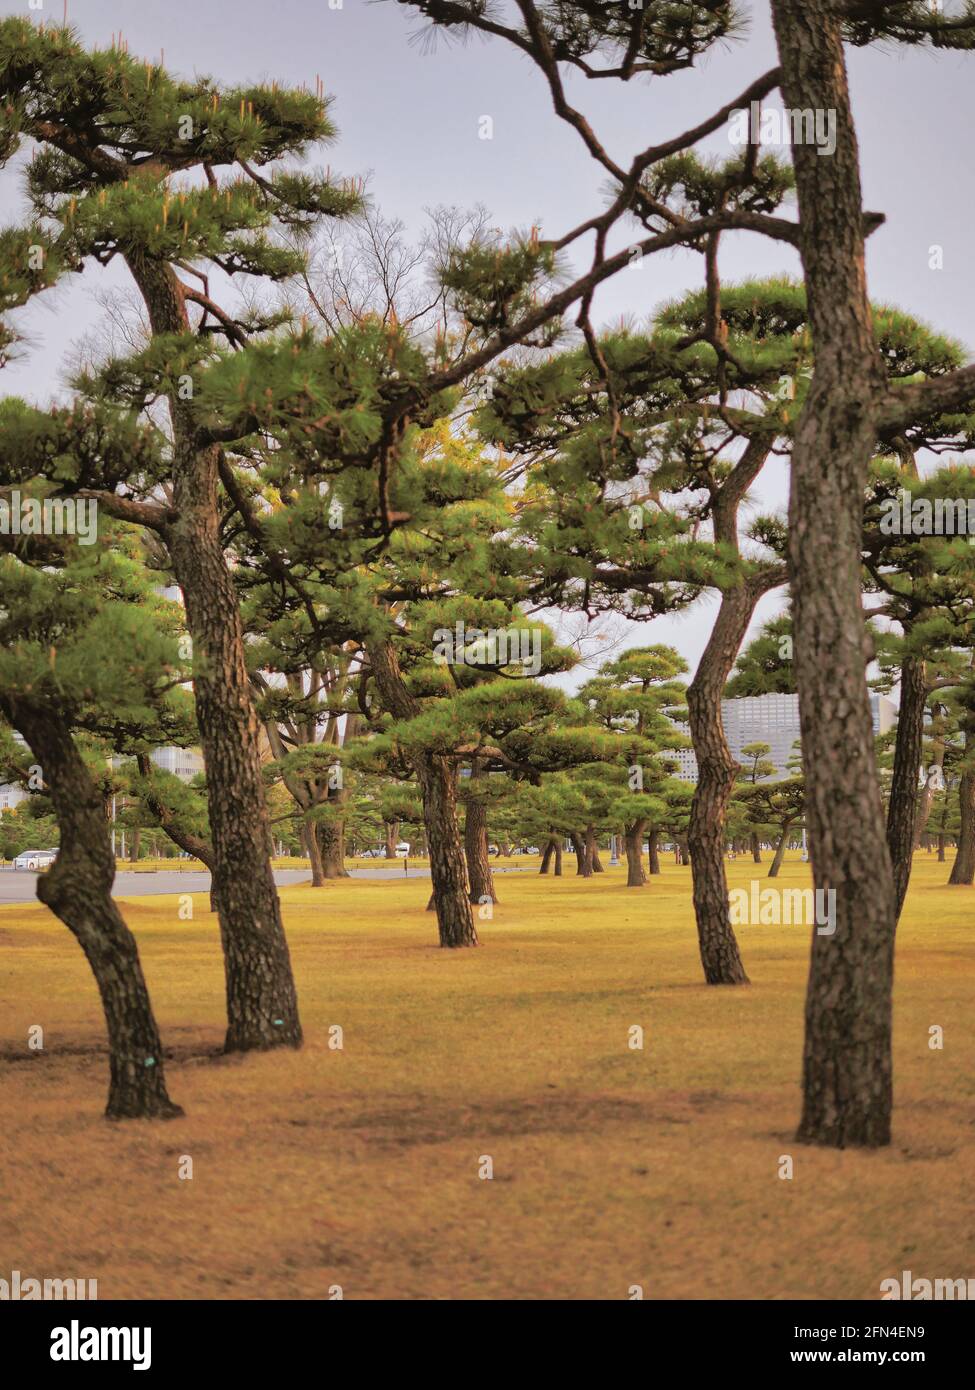 Paysage du parc national de Kokyogaien à Tokyo. Arbres incurvés et verdure orientale dans le parc près du Palais impérial de Tokyo. Banque D'Images